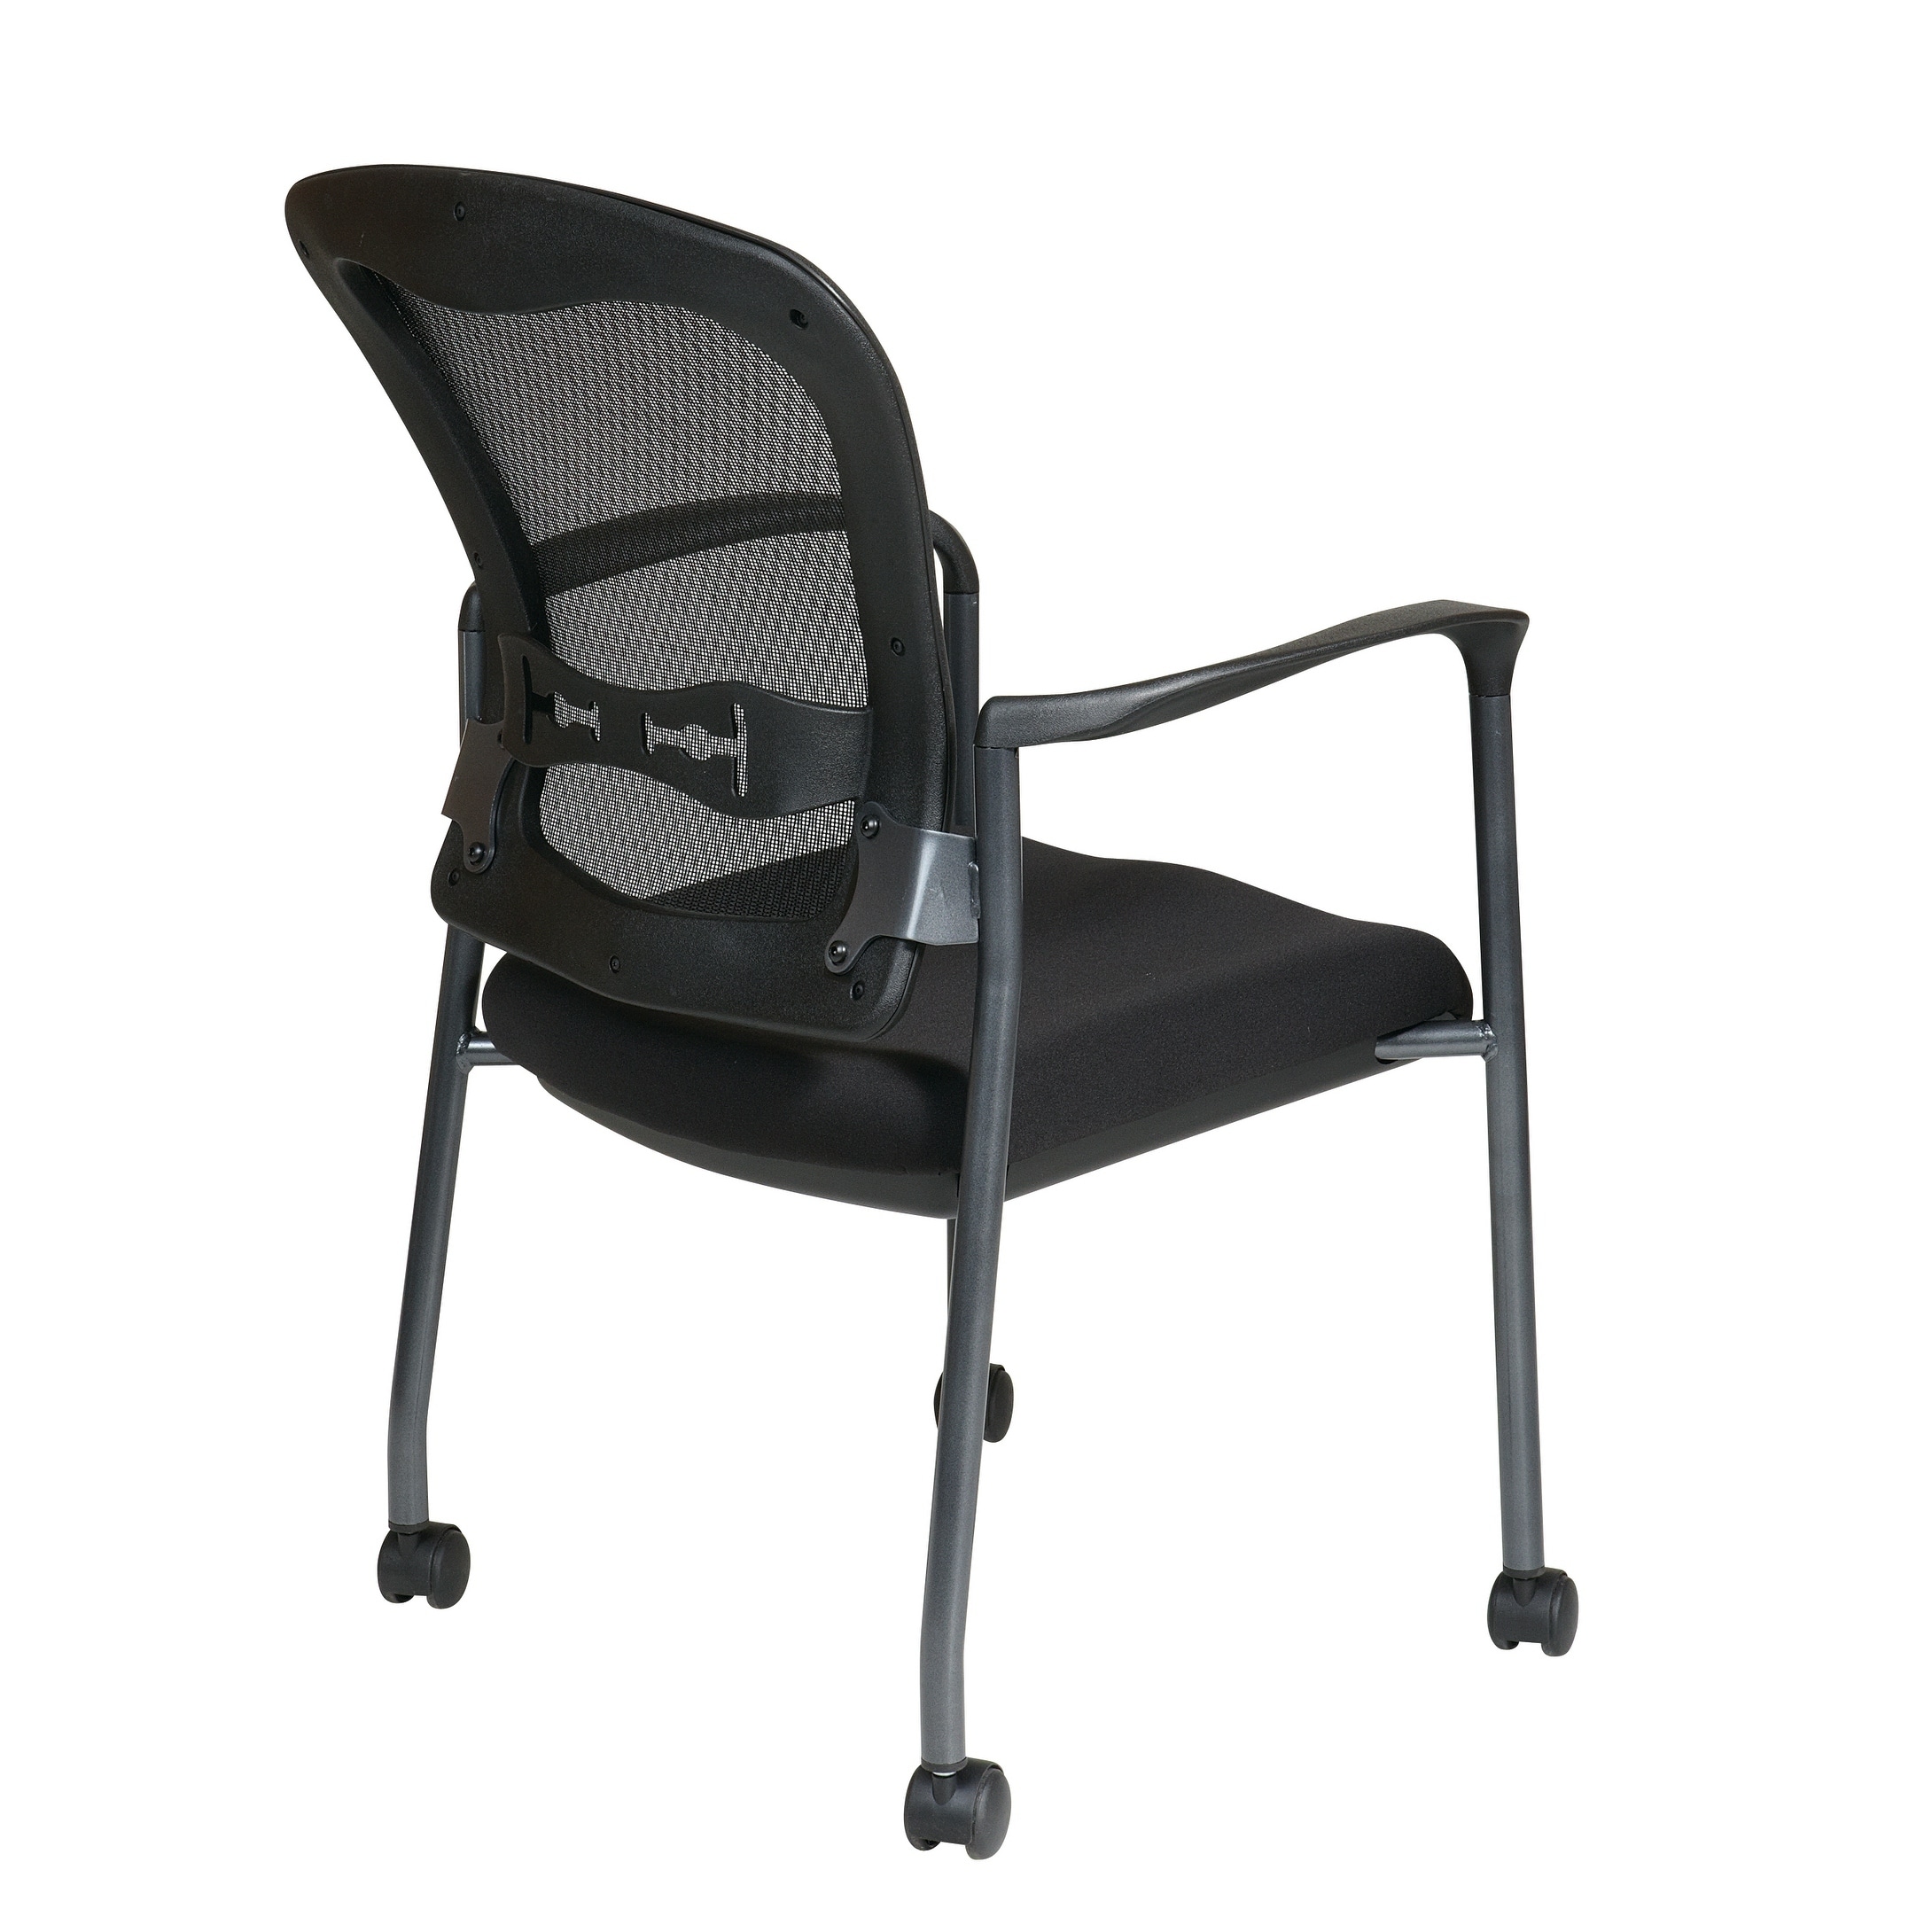 lumbar support chair